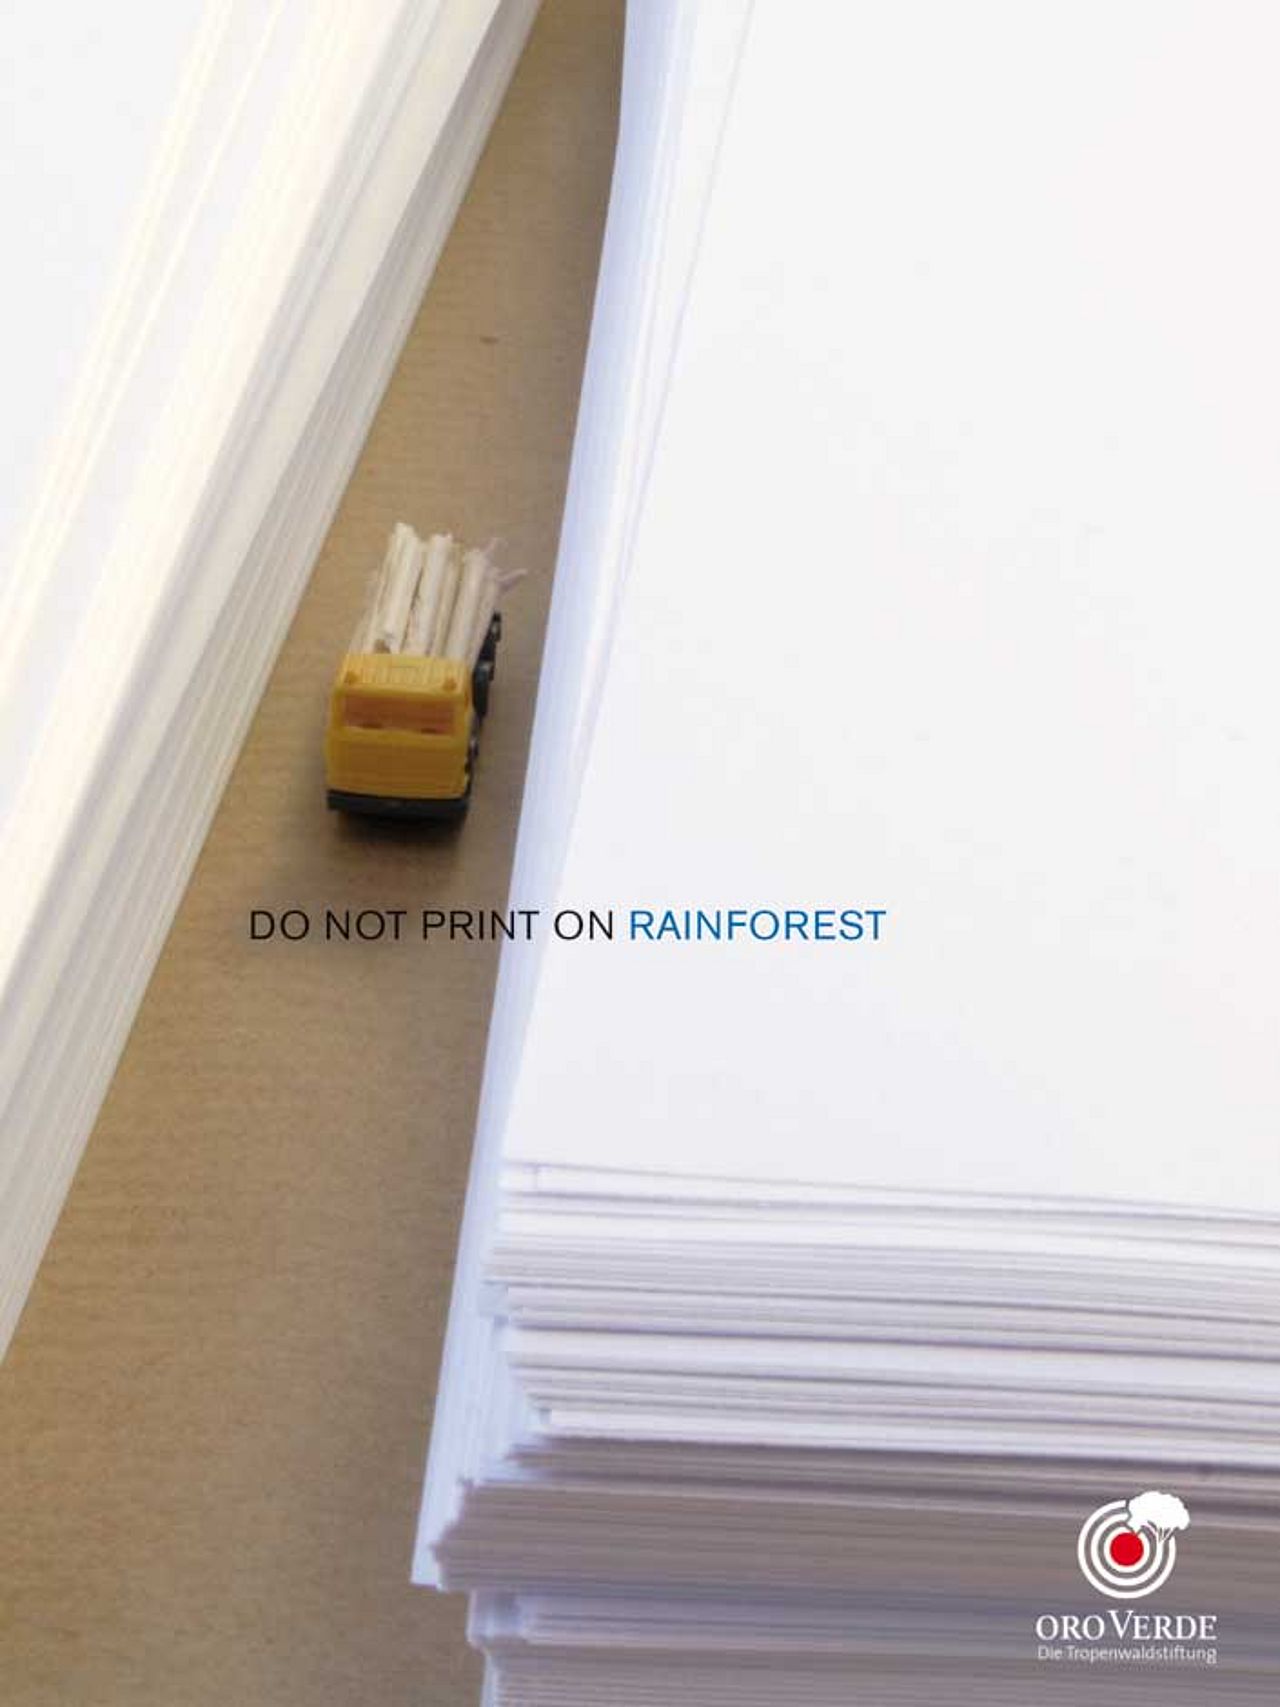 Papier als Ursache für Regenwaldabholzung, Plakat im Rahmen des Schülerwettbewerbs "Geist ist geil"